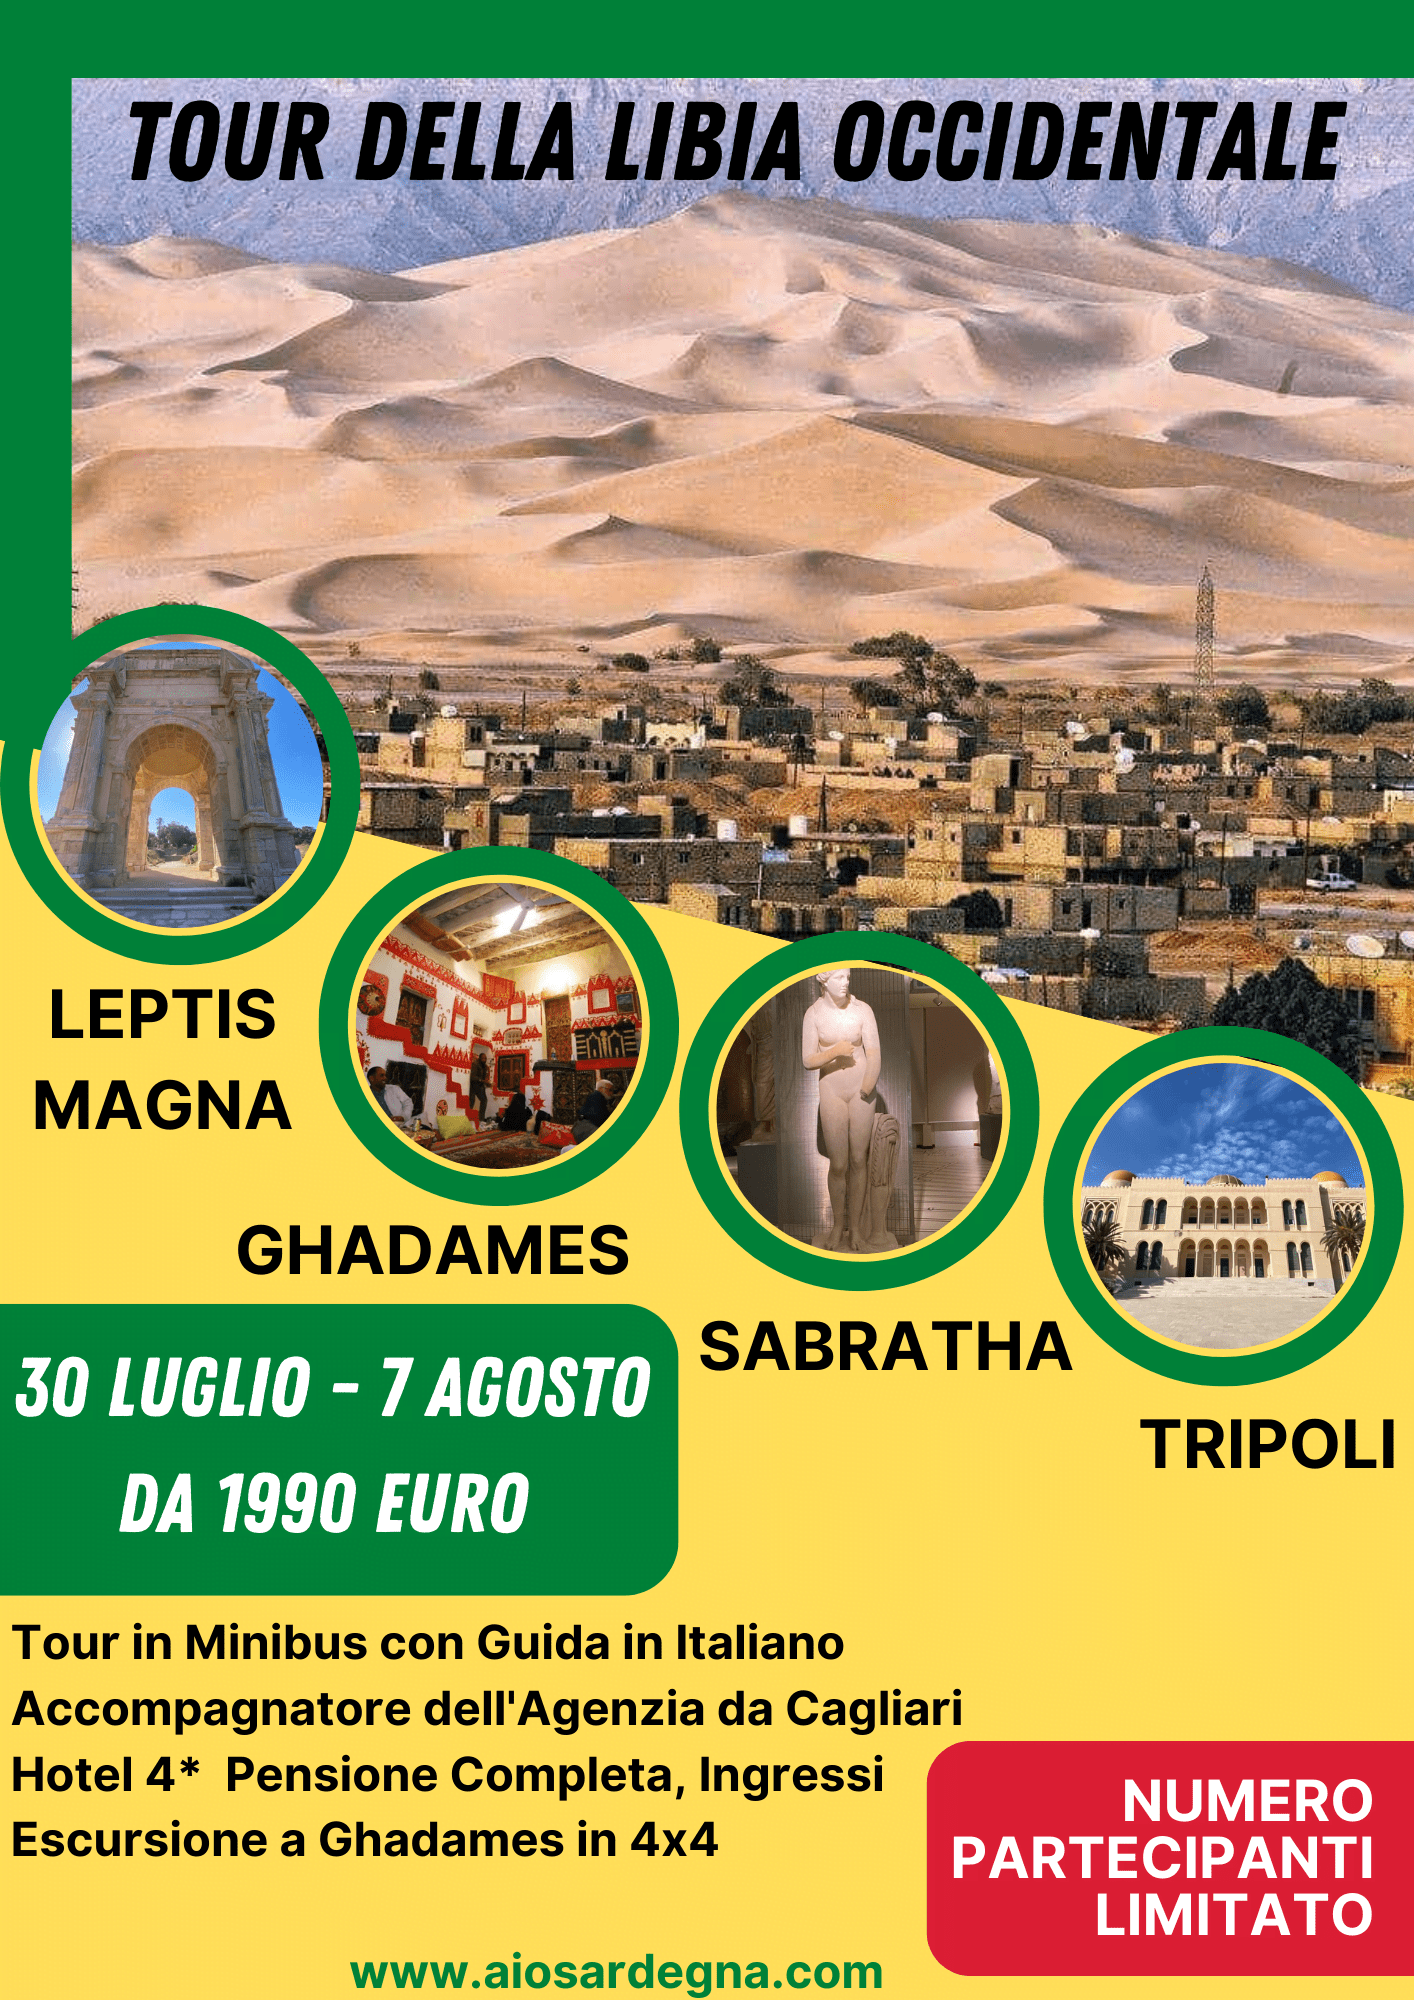 libia-tour-offerta- viaggio-organizzato